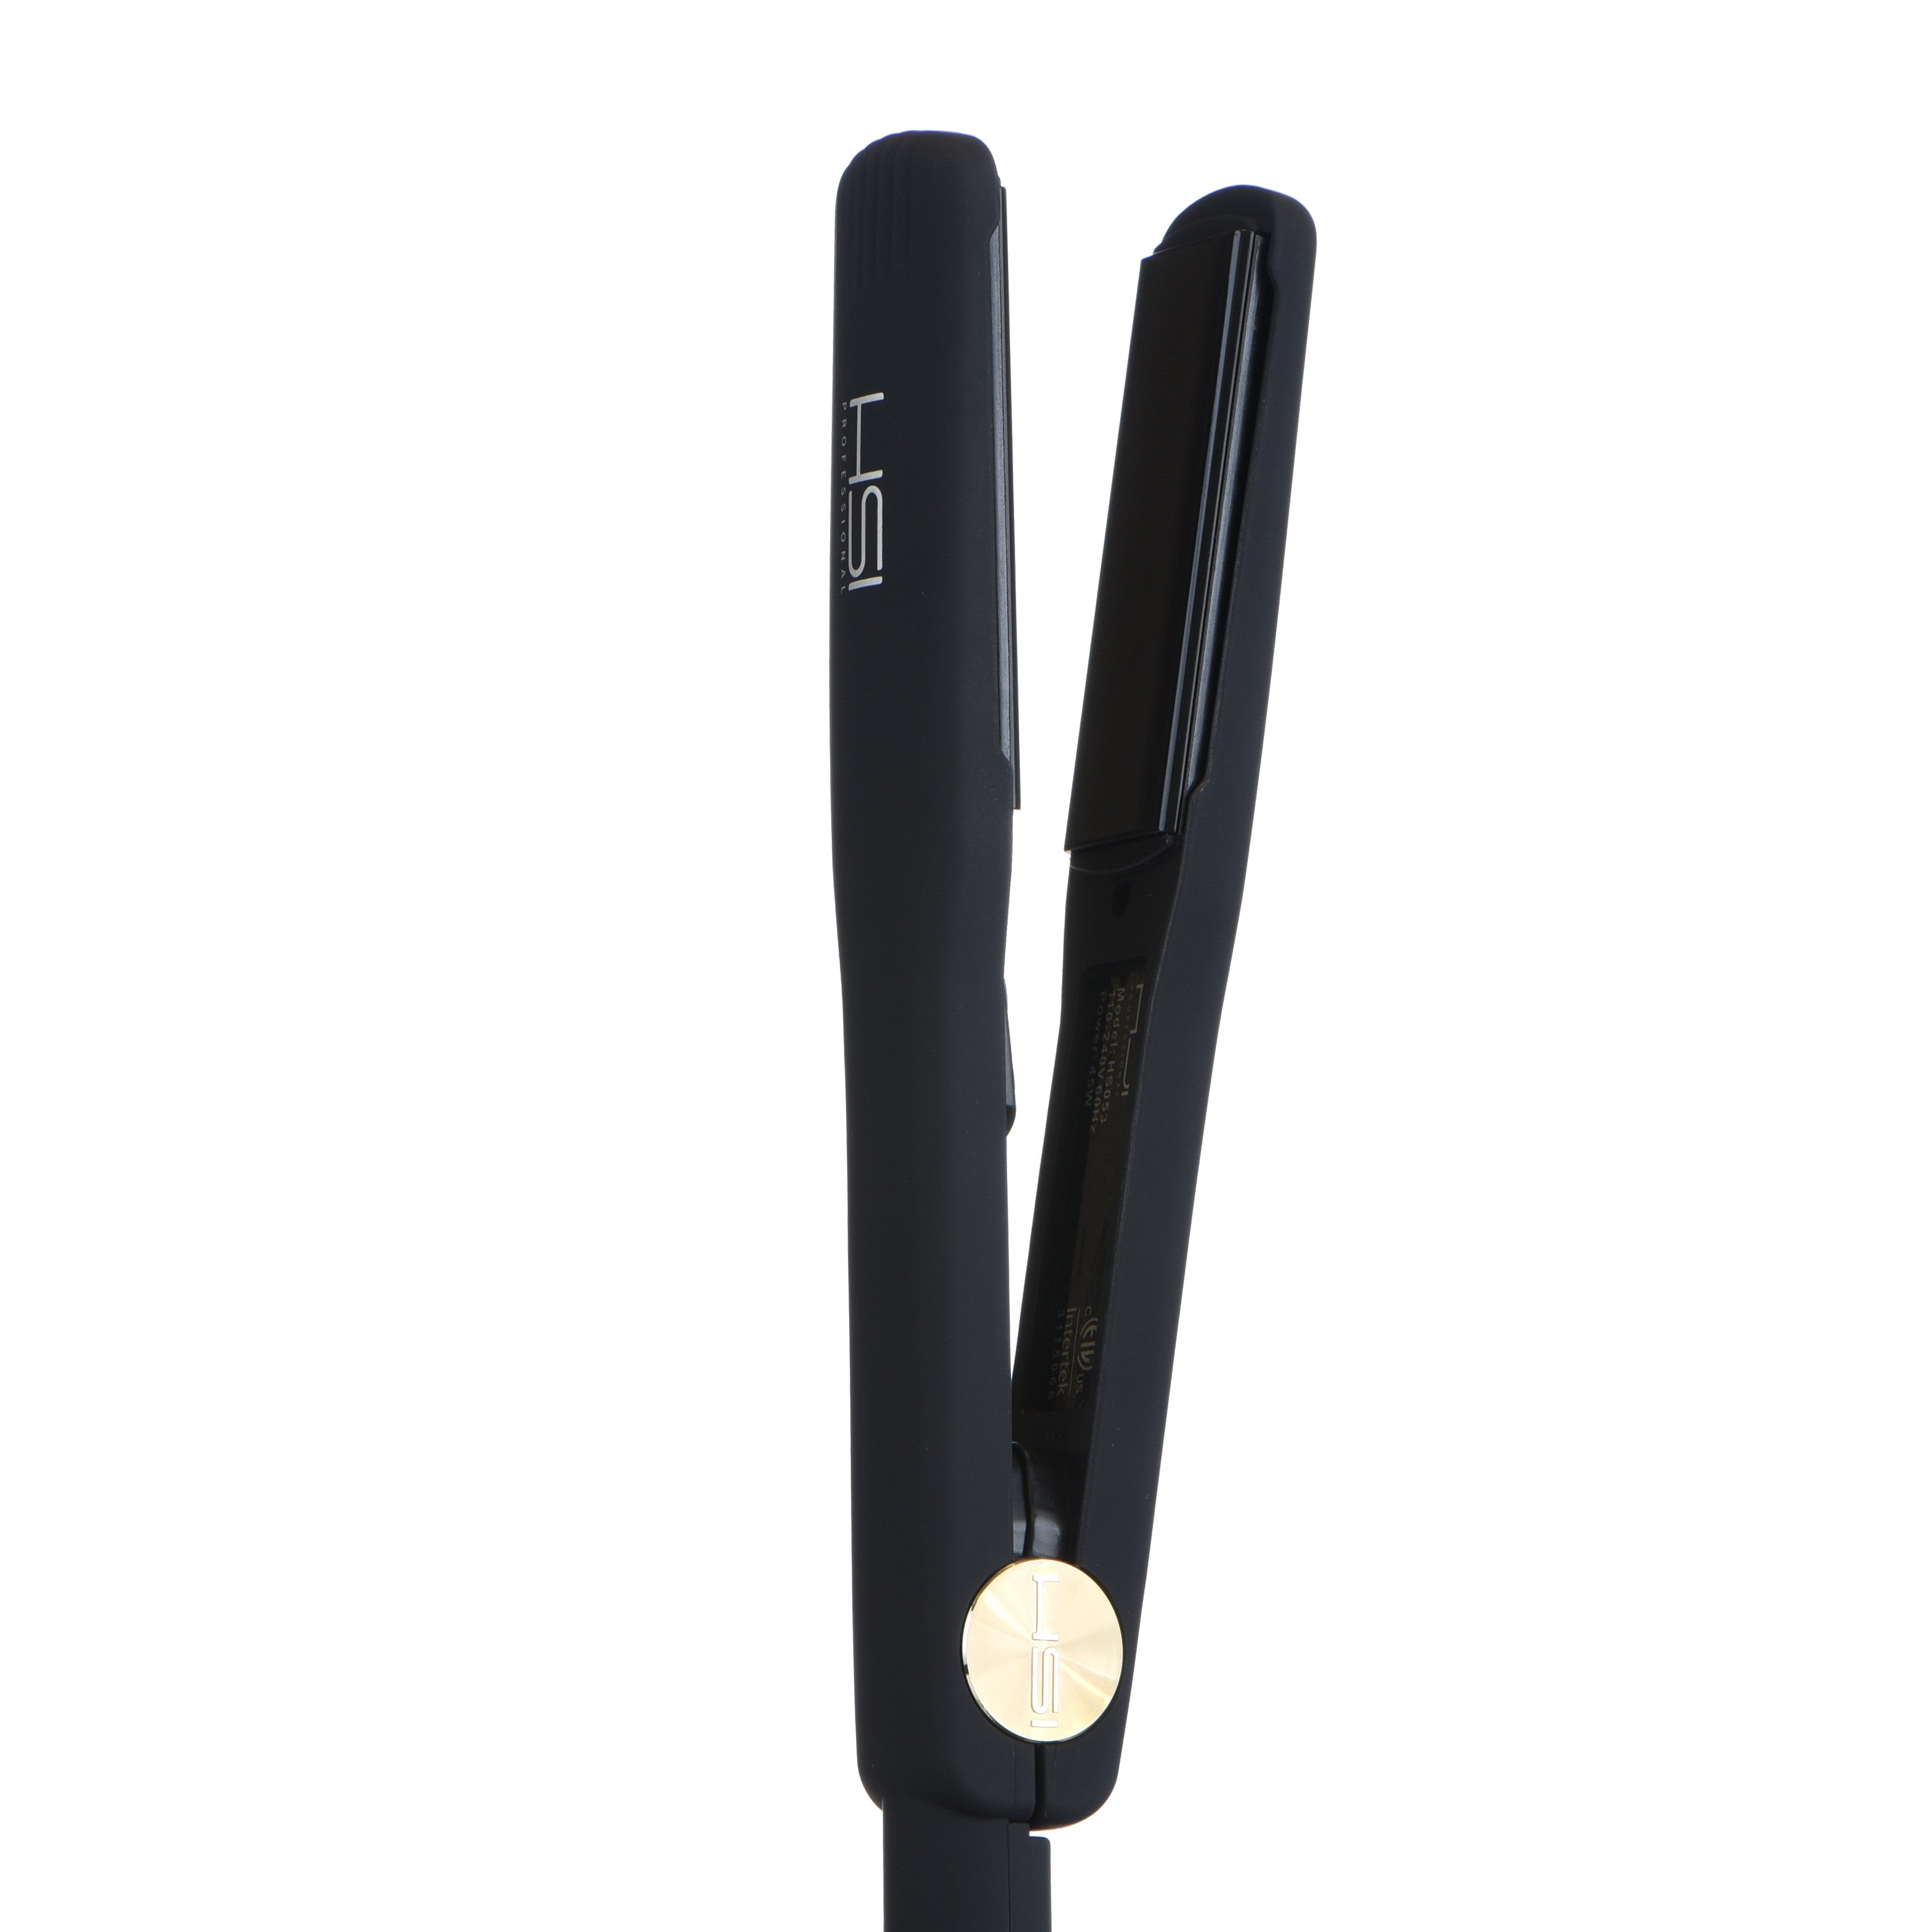 hsi professional glider | ceramic tourmaline ionic flat iron hair straightener